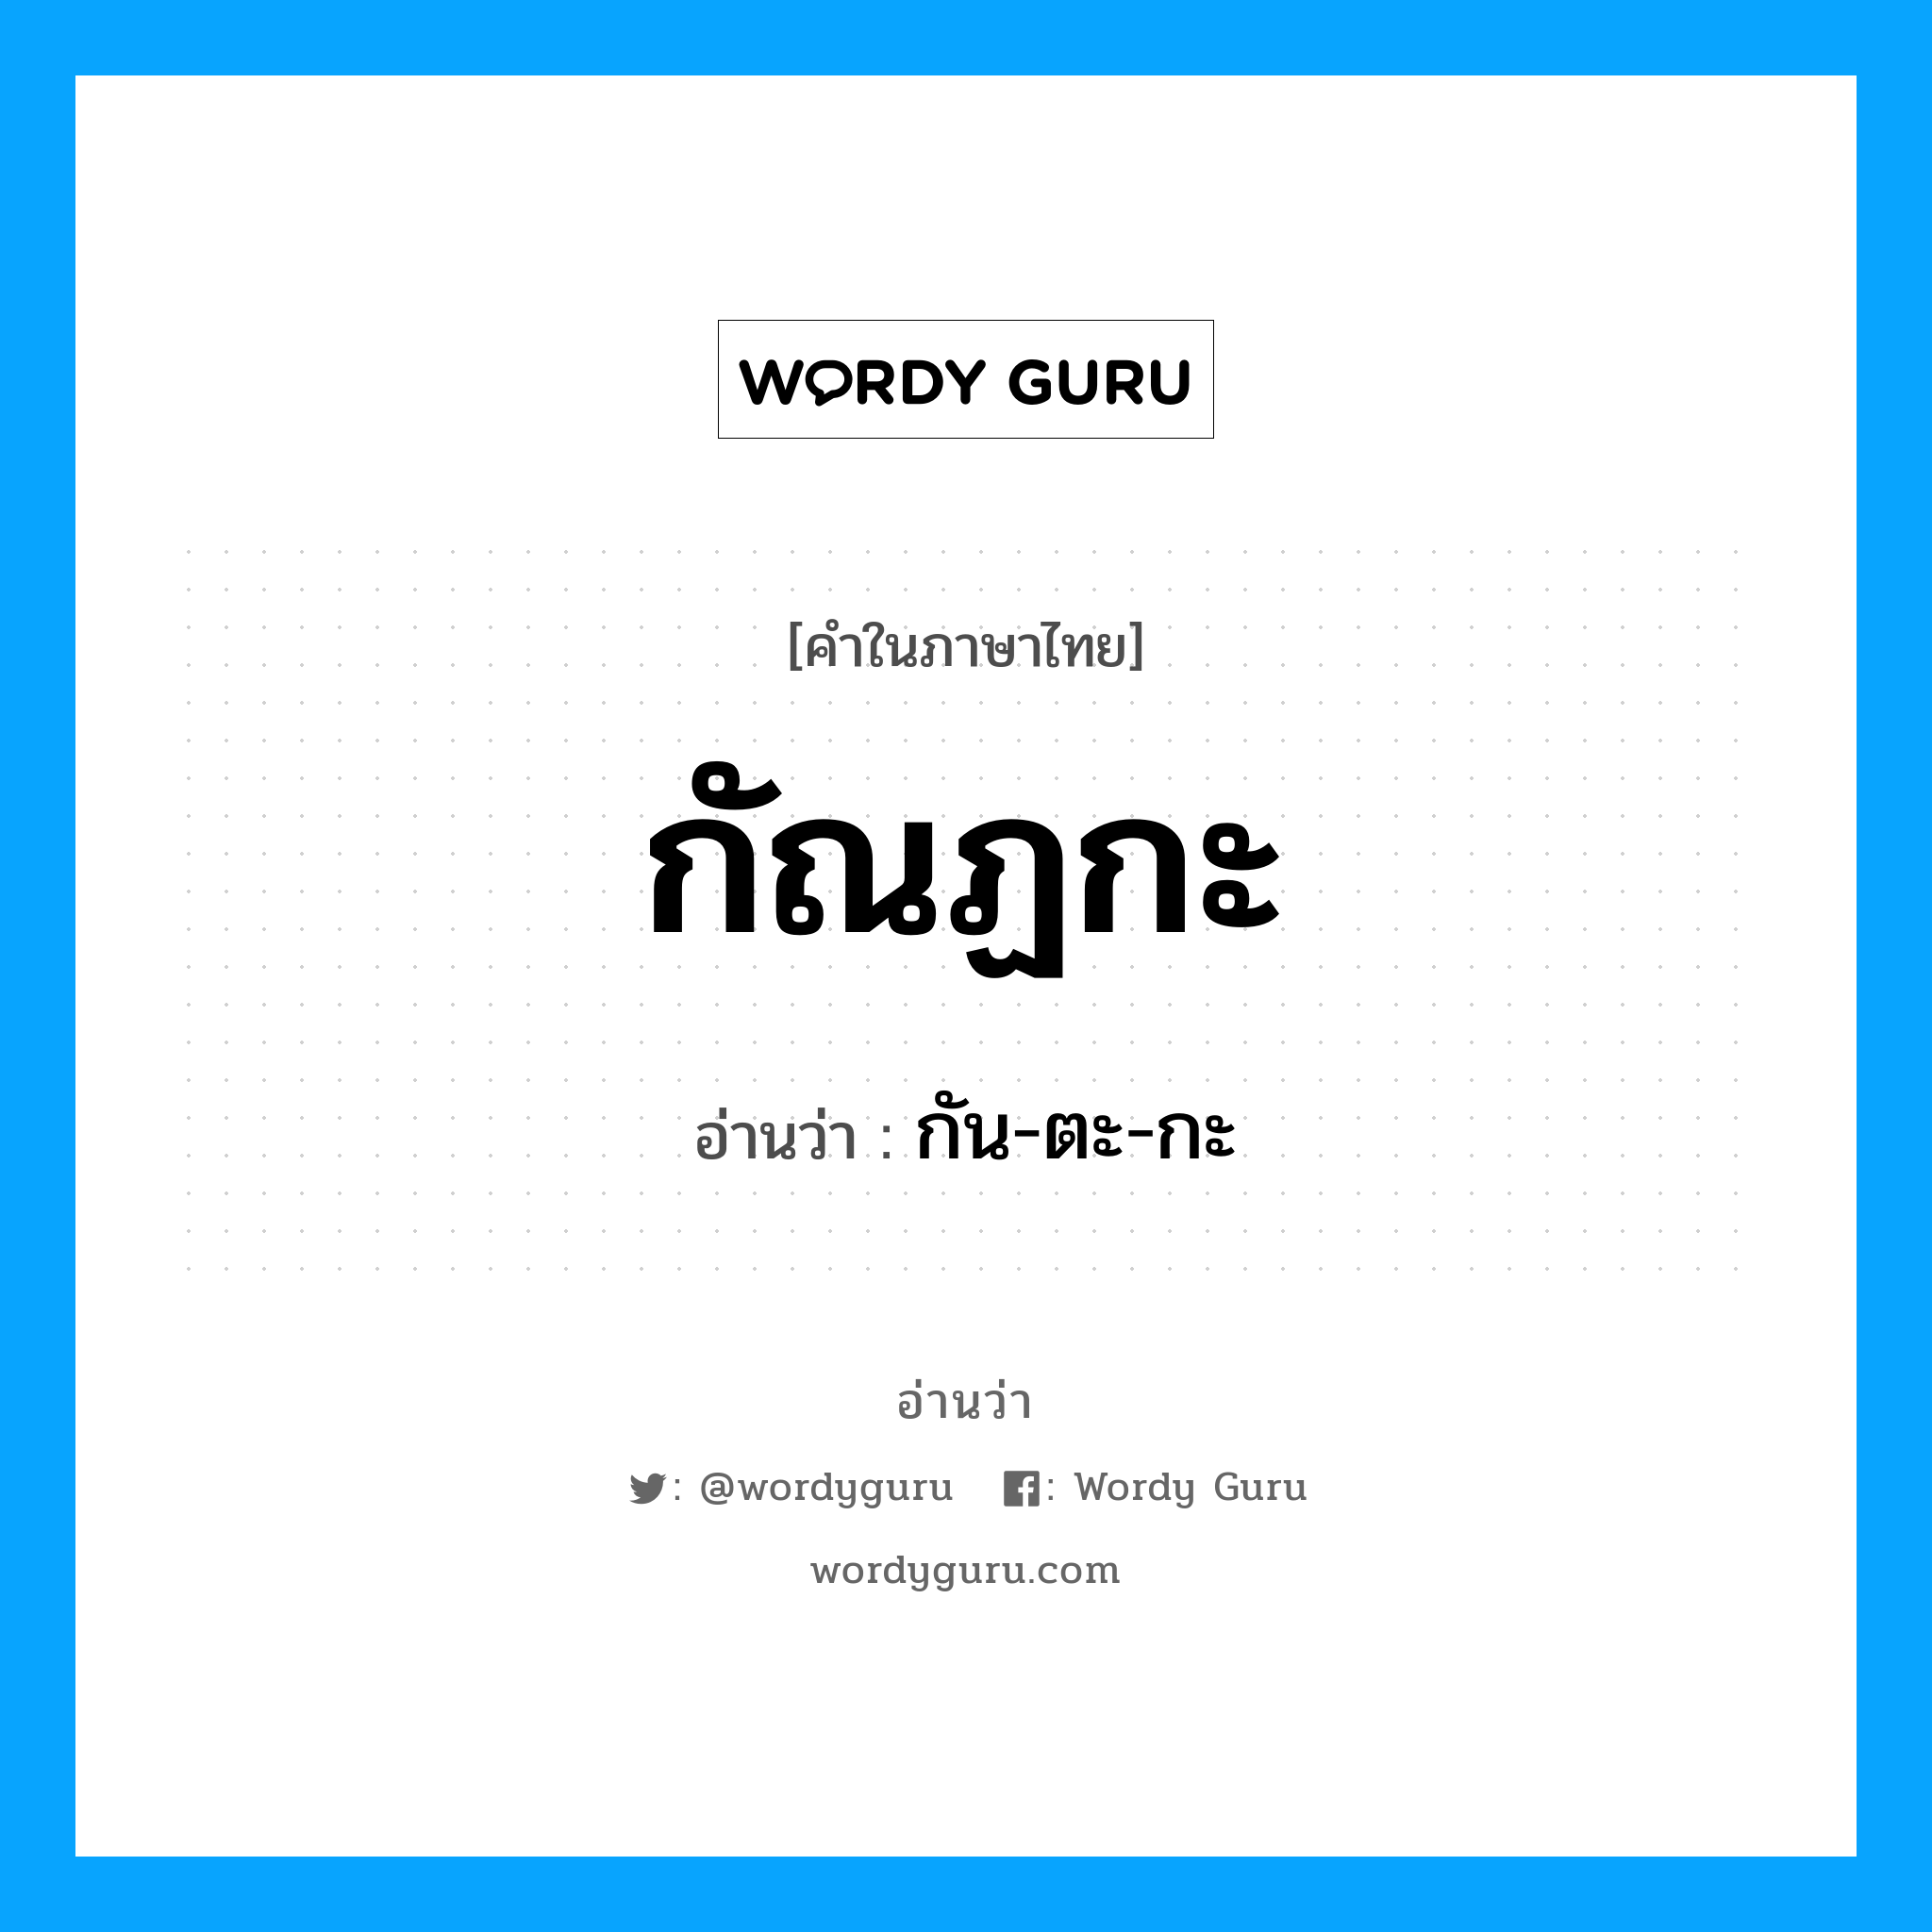 กัน-ตะ-กะ เป็นคำอ่านของคำไหน?, คำในภาษาไทย กัน-ตะ-กะ อ่านว่า กัณฏกะ